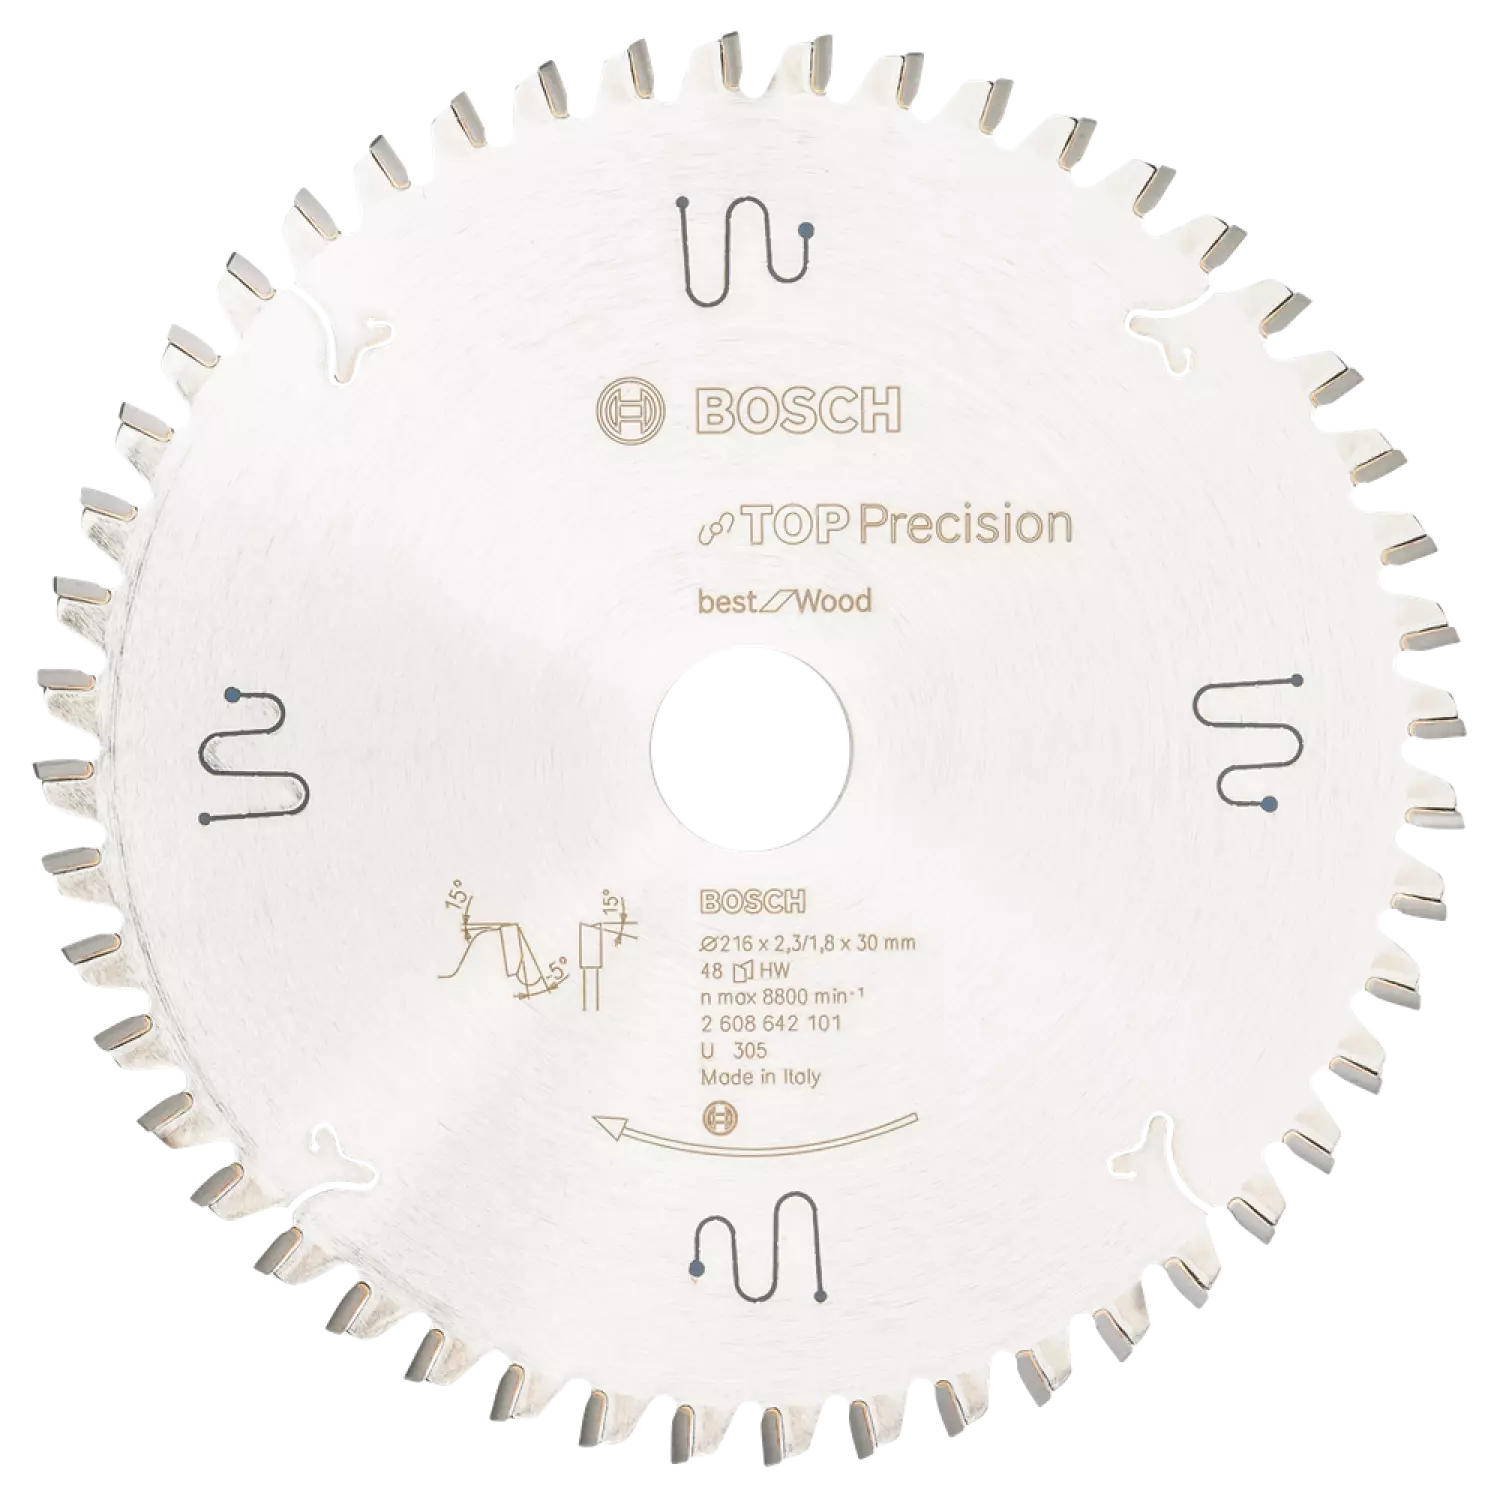 Bosch 2608642101 - Lame de Scie Circulaire Top Precision Best pour Wood, 216 x 30 x 2,3 mm, 48D